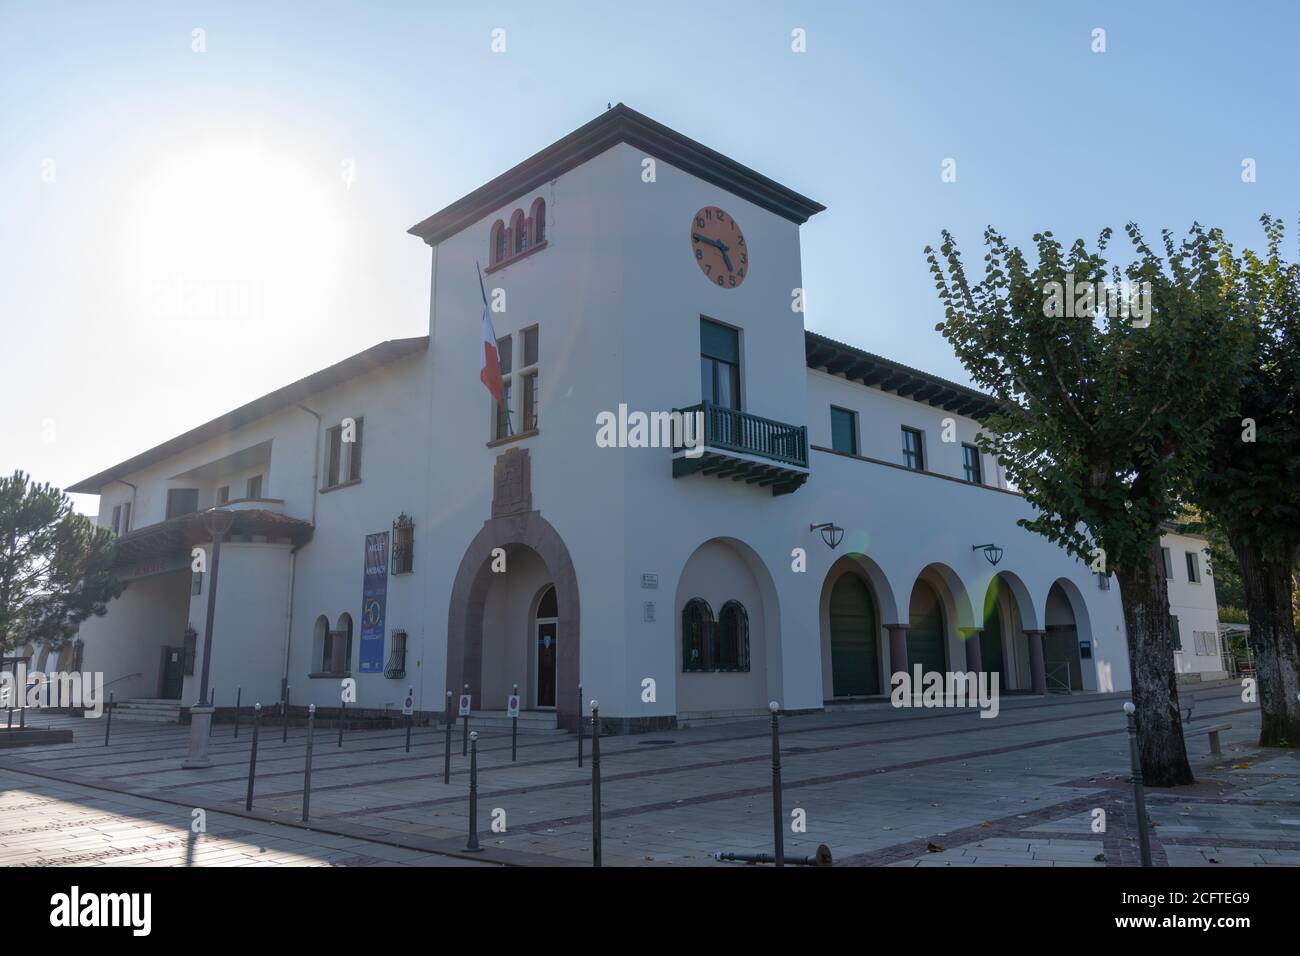 Hôtel de ville d'inspiration basque de la ville d'Anglet, France Banque D'Images